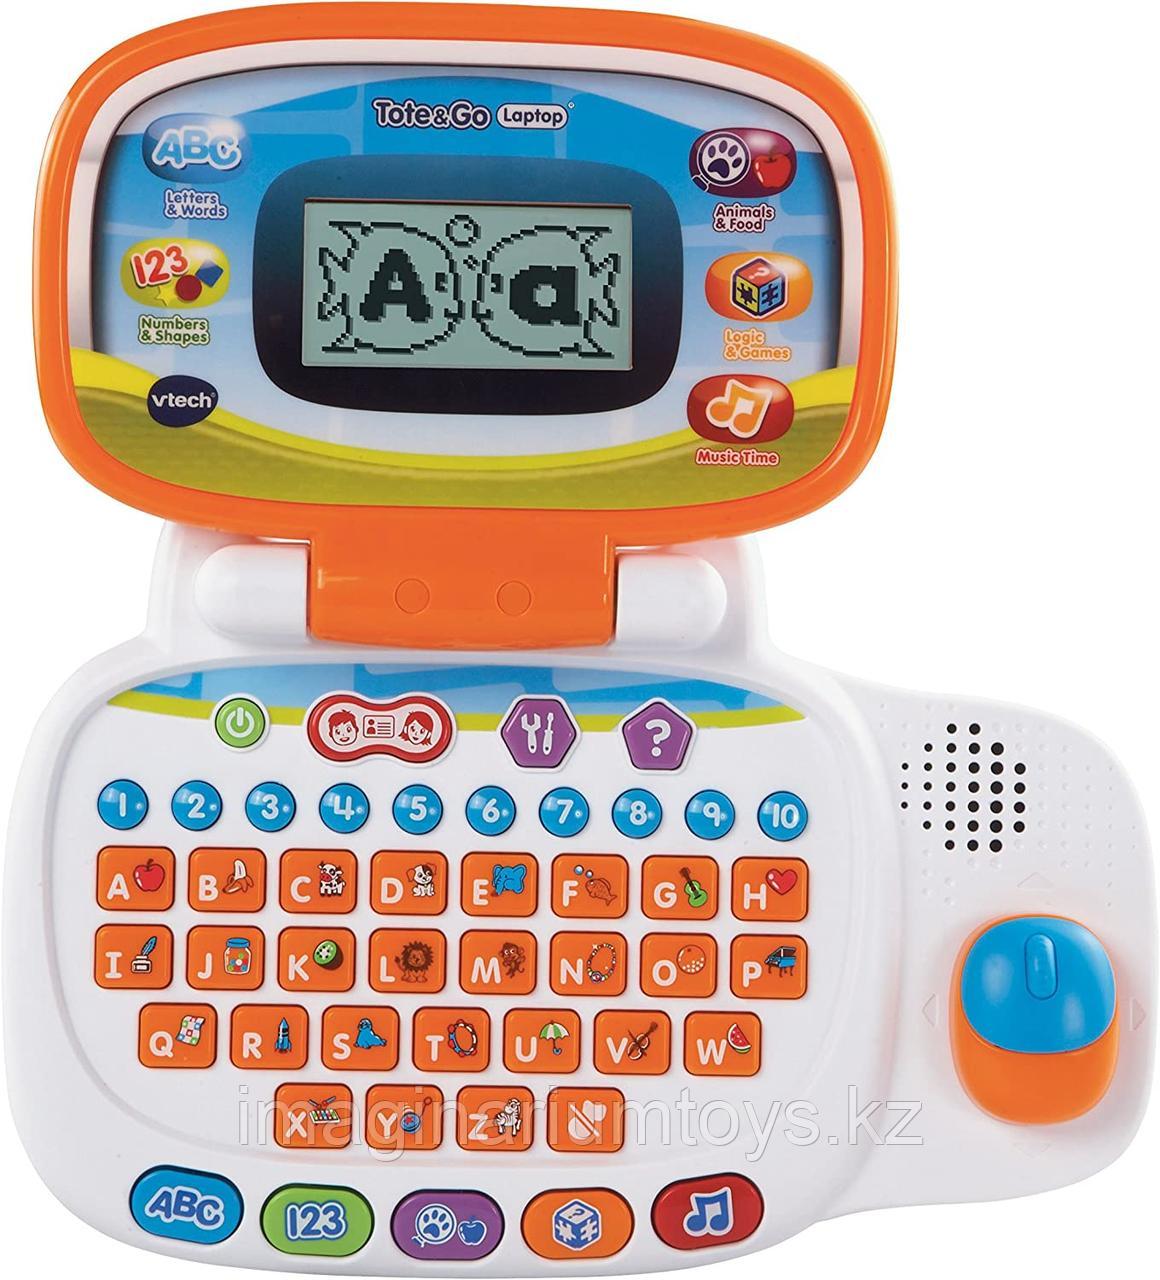 Детский компьютер VTech игровой,интерактивный,обучающий ноутбук Tote&Go Laptop, фото 1